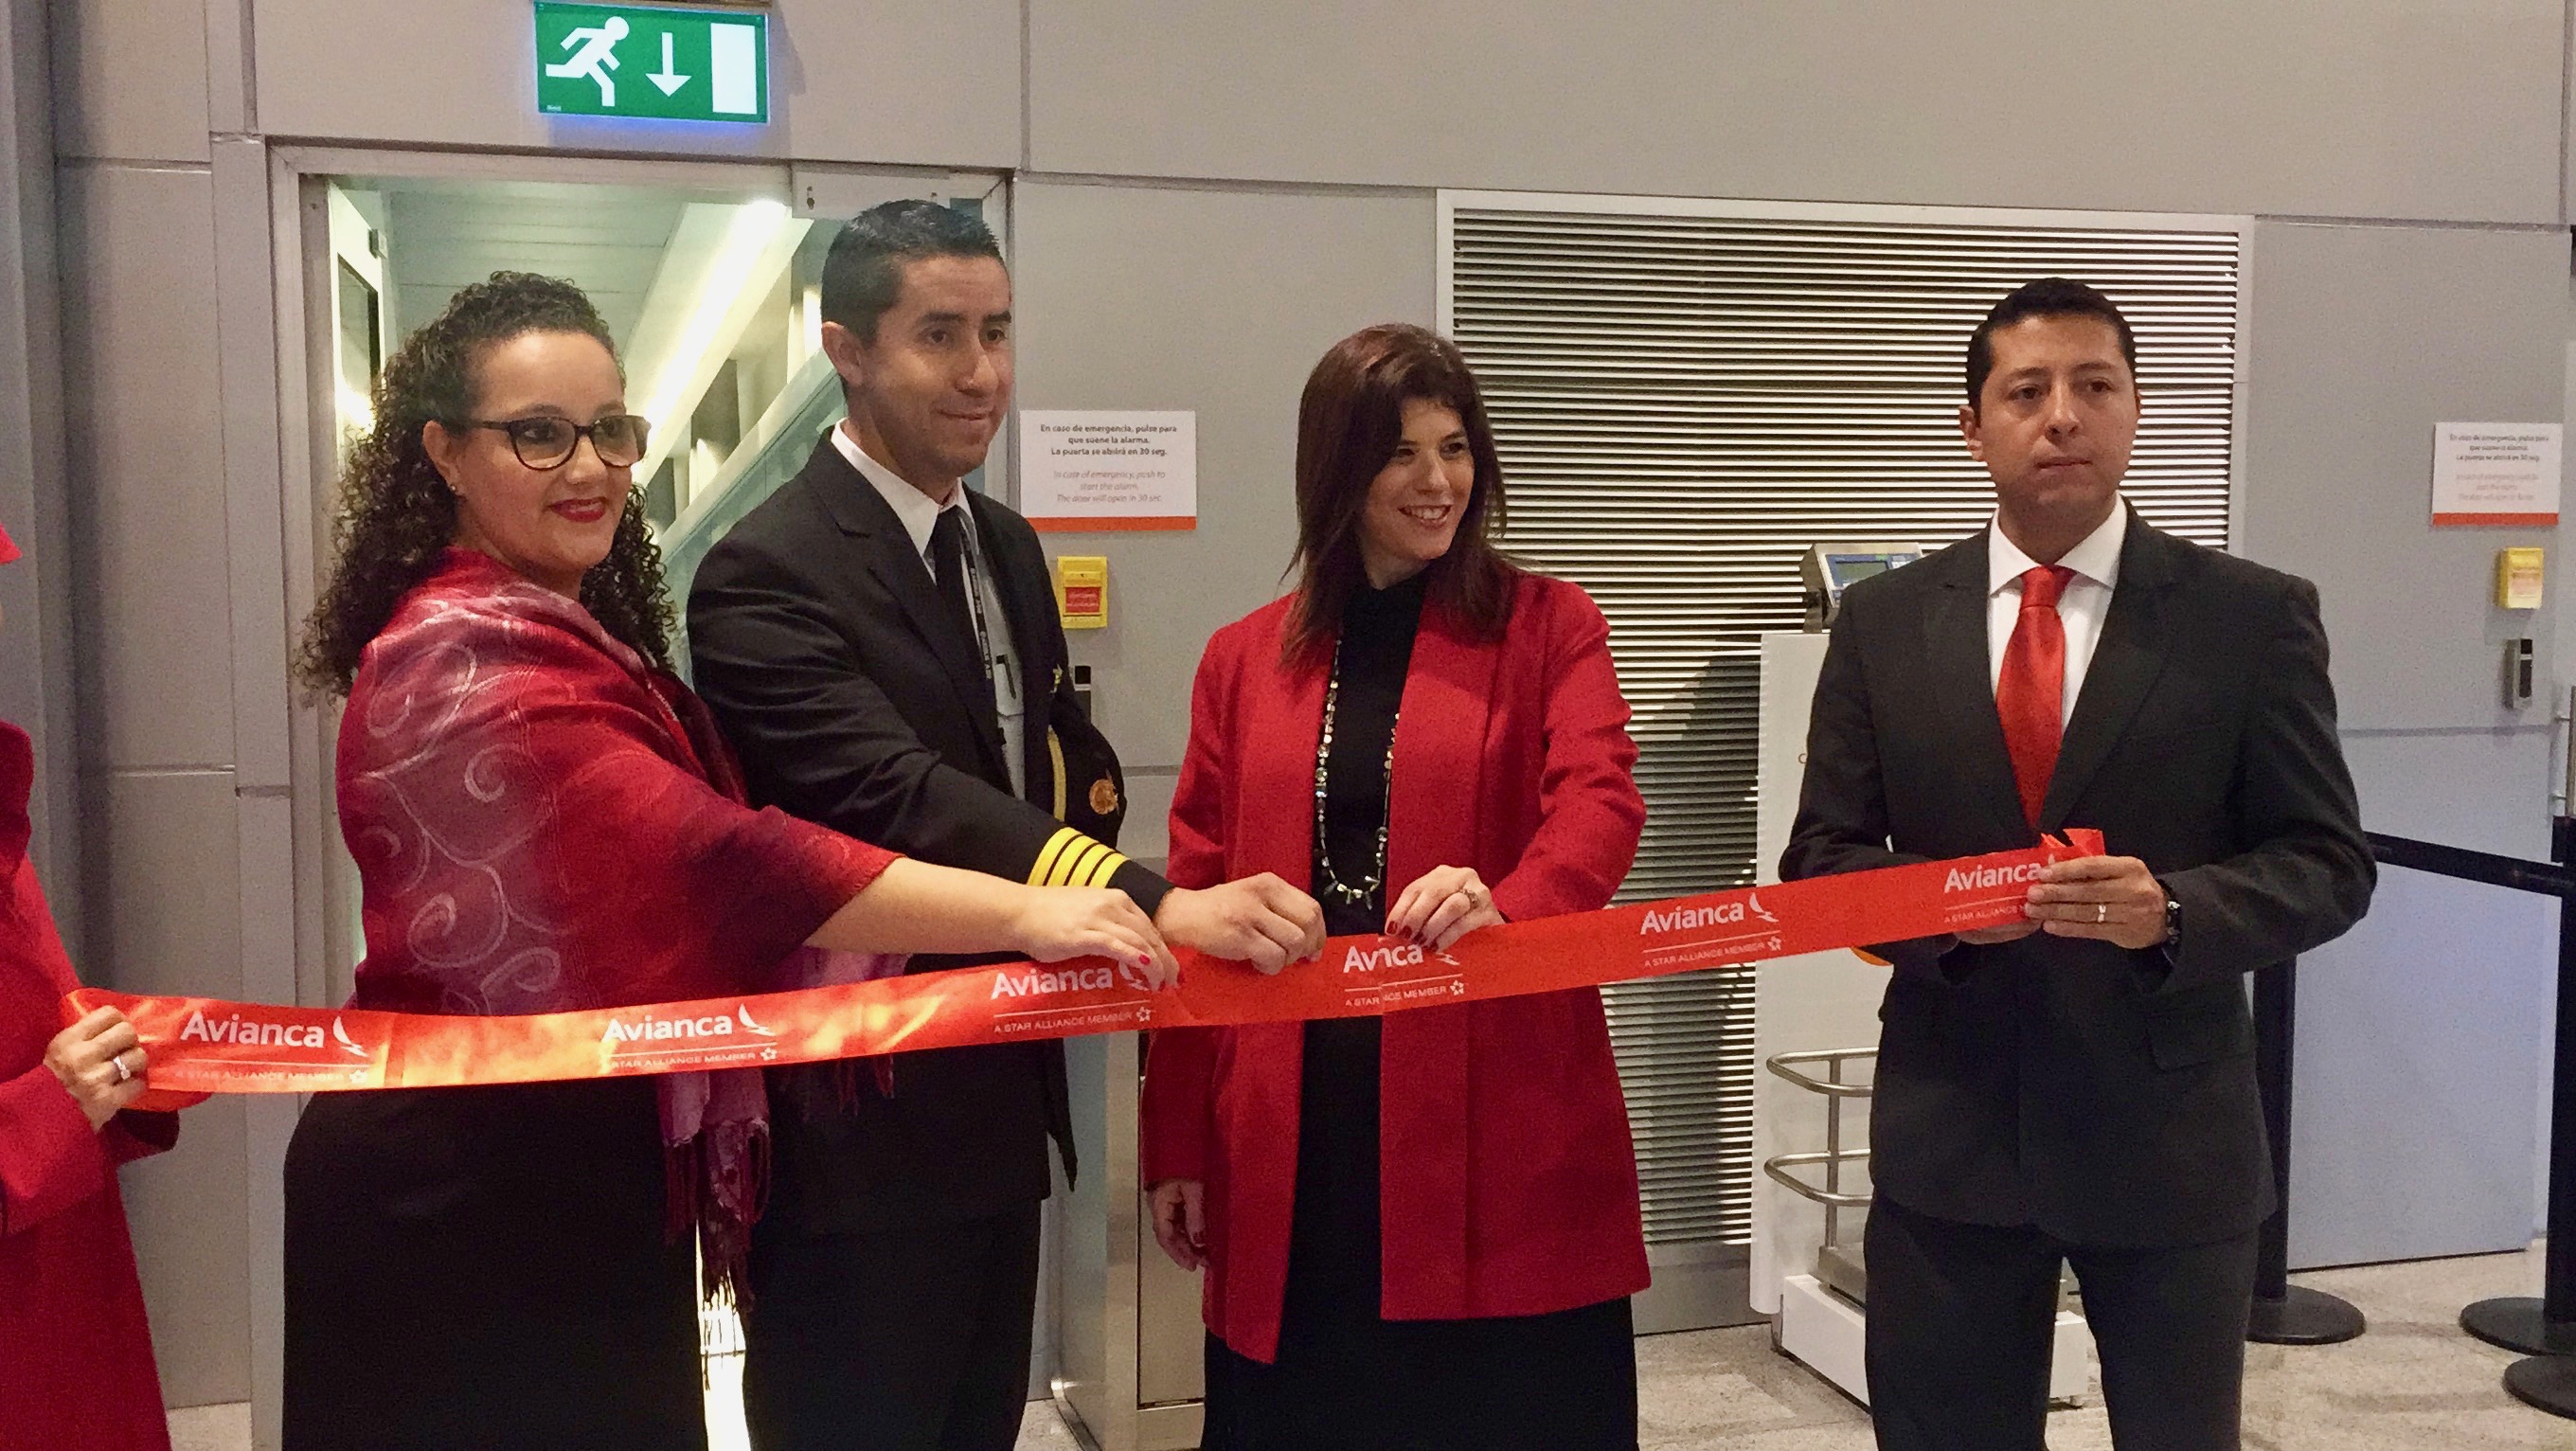 La Embajadora de Colombia en Uruguay, Natalia Abello Vives, participó en la inauguración del vuelo directo de Avianca 